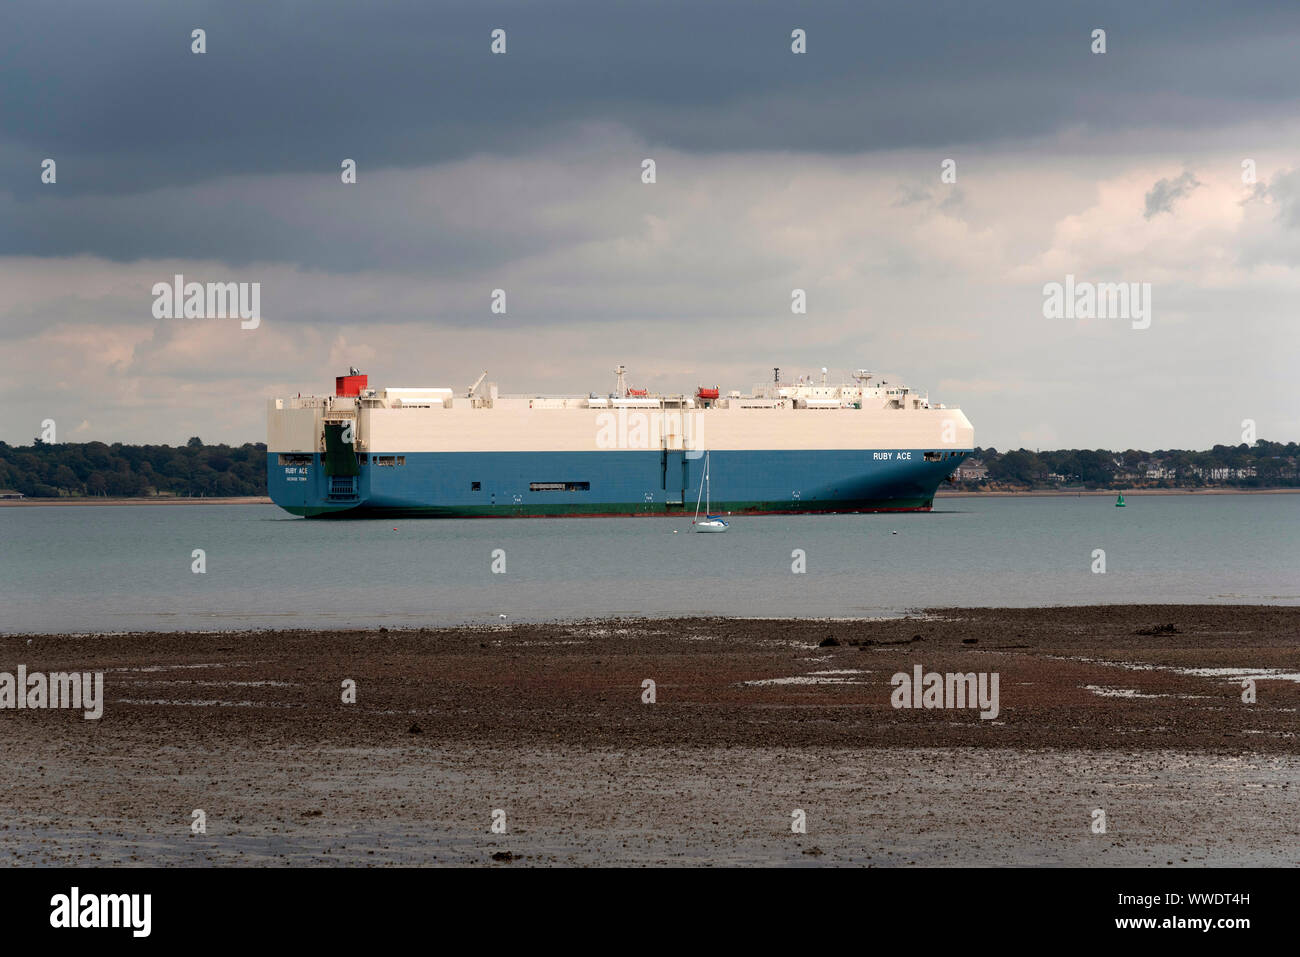 L'eau de Southampton, Angleterre, Royaume-Uni. Septembre 2019. Le navire transporteur de véhicules roro Ace Ruby en cours sur l'eau du sud de l'Angleterre Southampton Banque D'Images